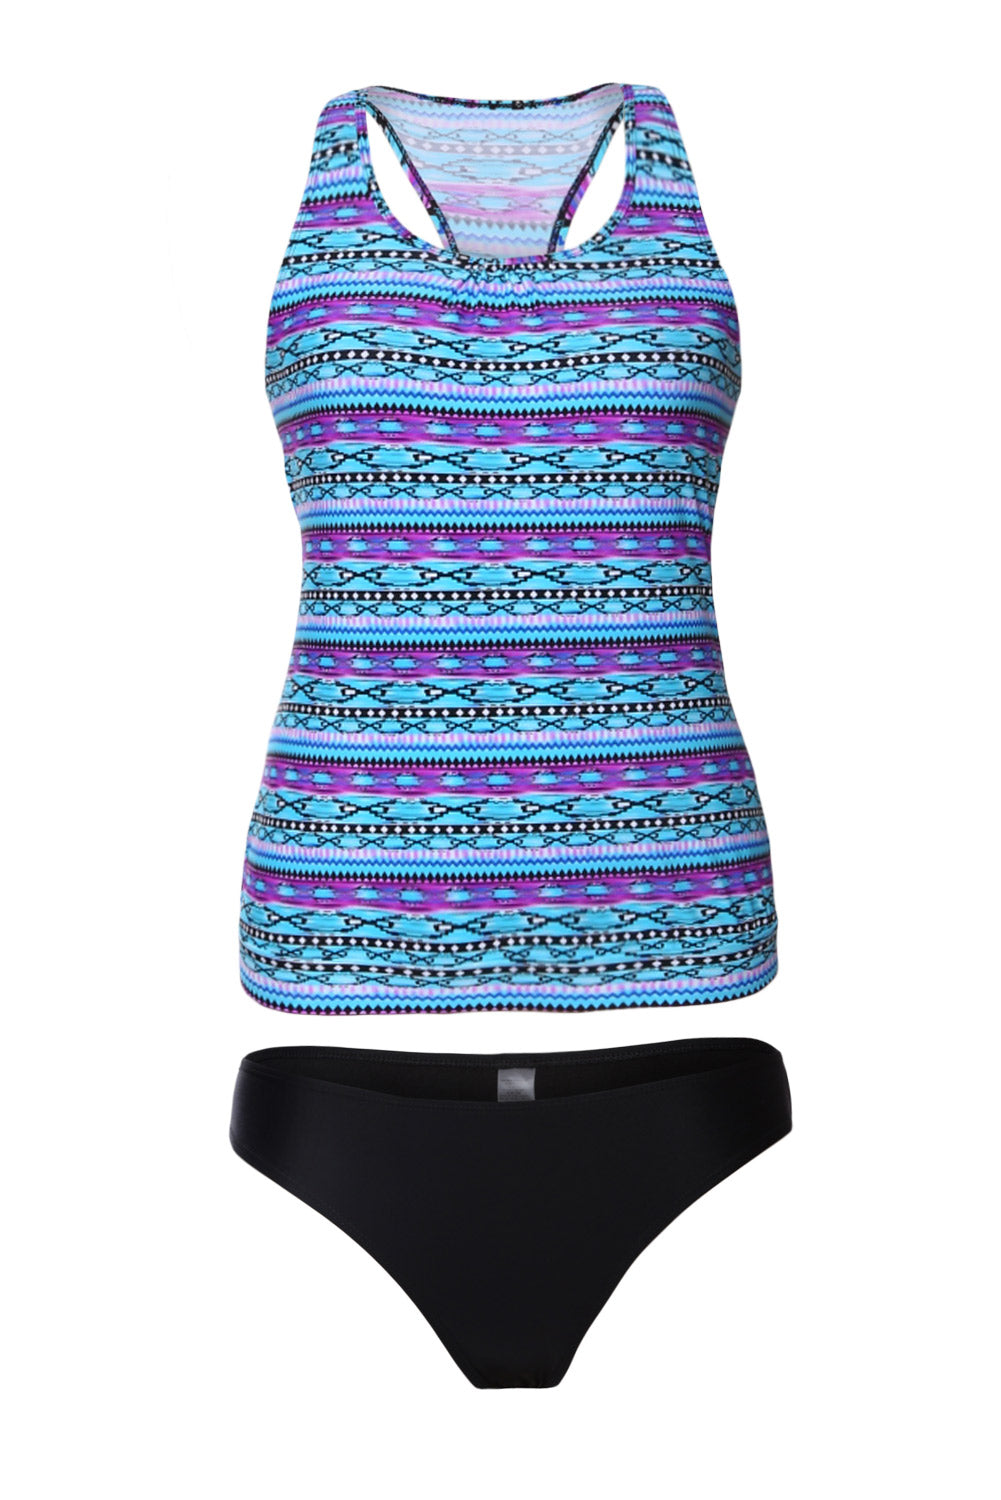 Tribal Beach Ethnic Print 2pcs Tankini Swimsuit Tankinis JT's Designer Fashion